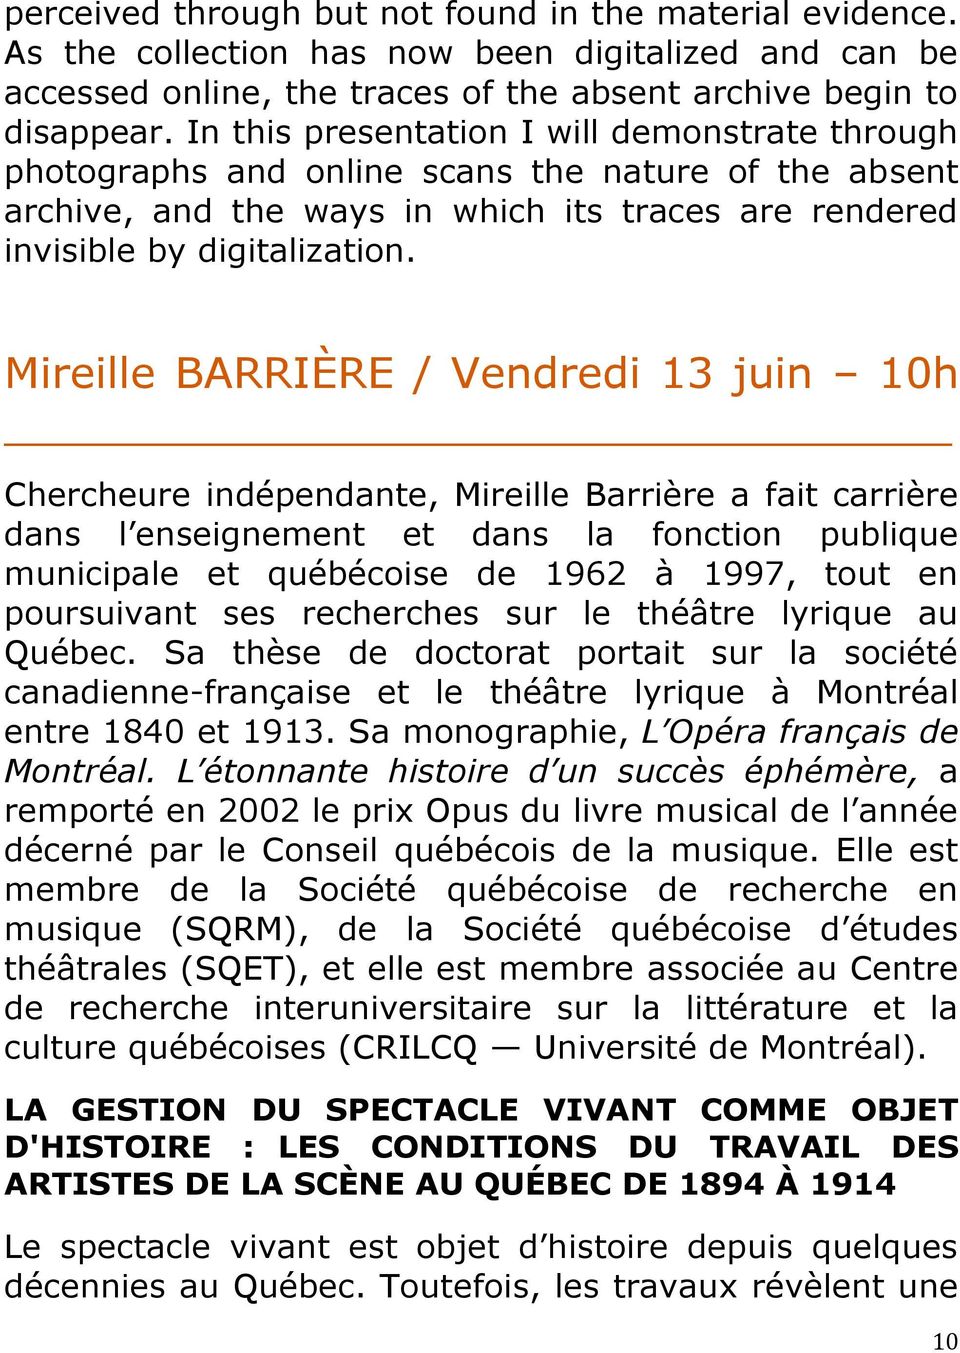 Mireille BARRIÈRE / Vendredi 13 juin 10h Chercheure indépendante, Mireille Barrière a fait carrière dans l enseignement et dans la fonction publique municipale et québécoise de 1962 à 1997, tout en